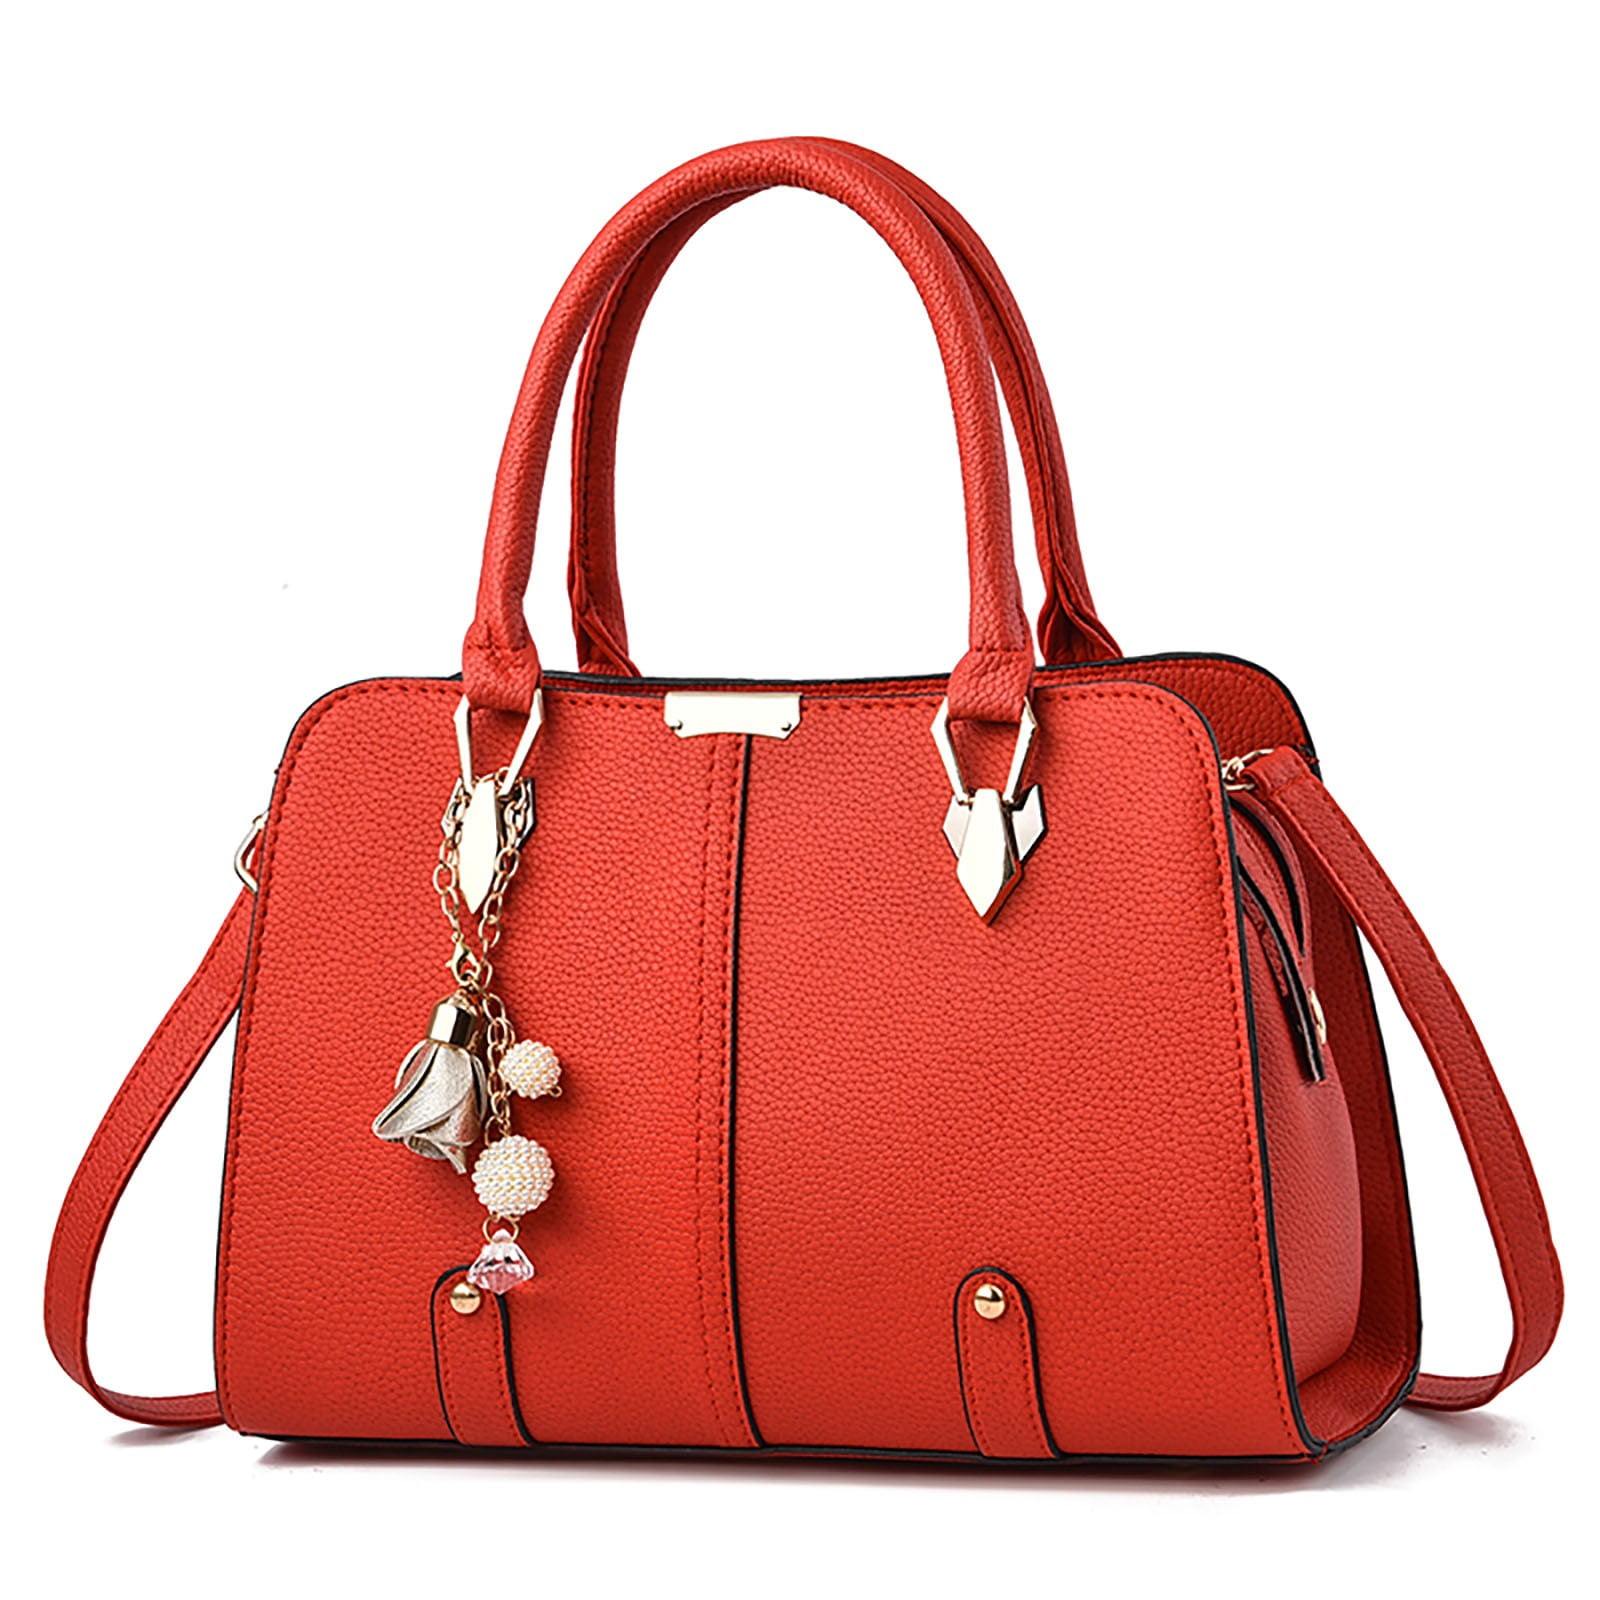 yinguo elegant ladies handbags fashion shoulder bags purses and handbags  for women - Walmart.com